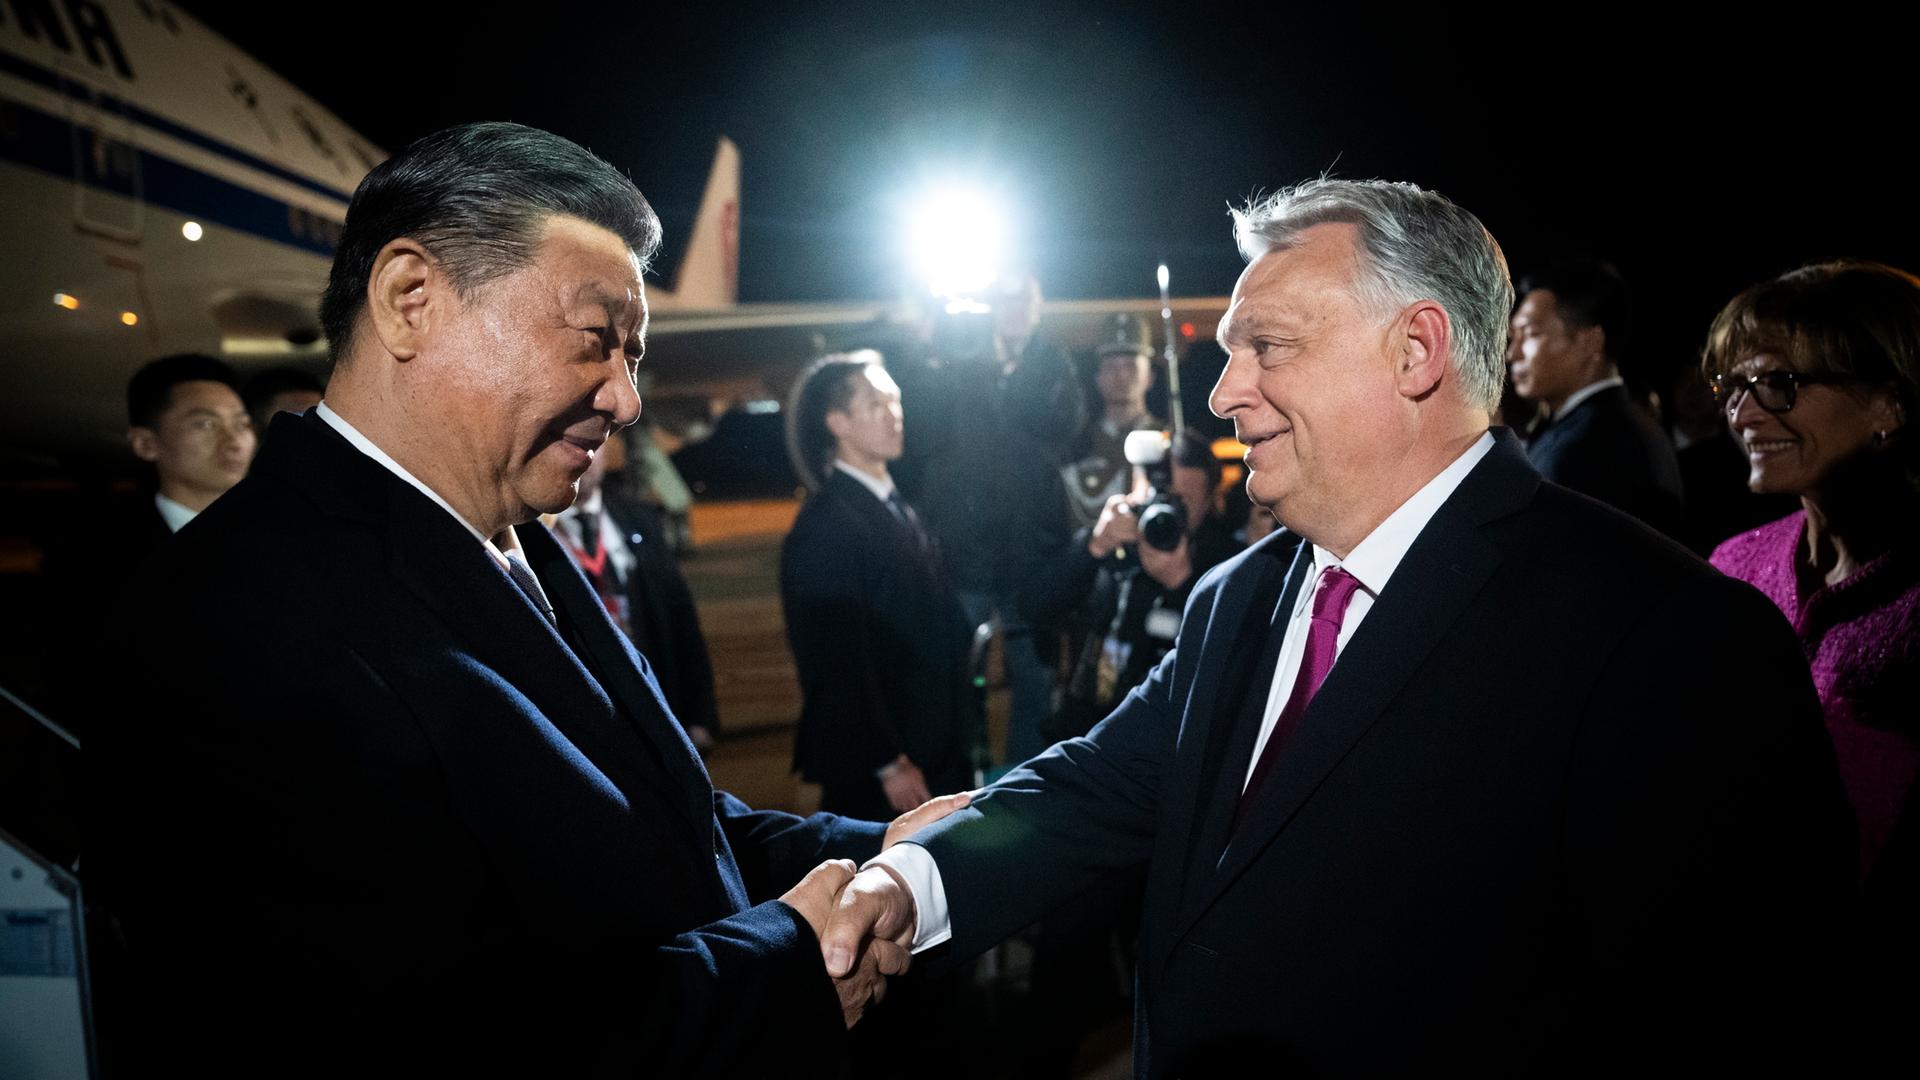 Der chinesische Präsident Xi Jinping wird in Budapest vom ungarischen Ministerpräsidenten Victor Orban begrüßt. Beide lächeln freundlich und geben einander die Hand.